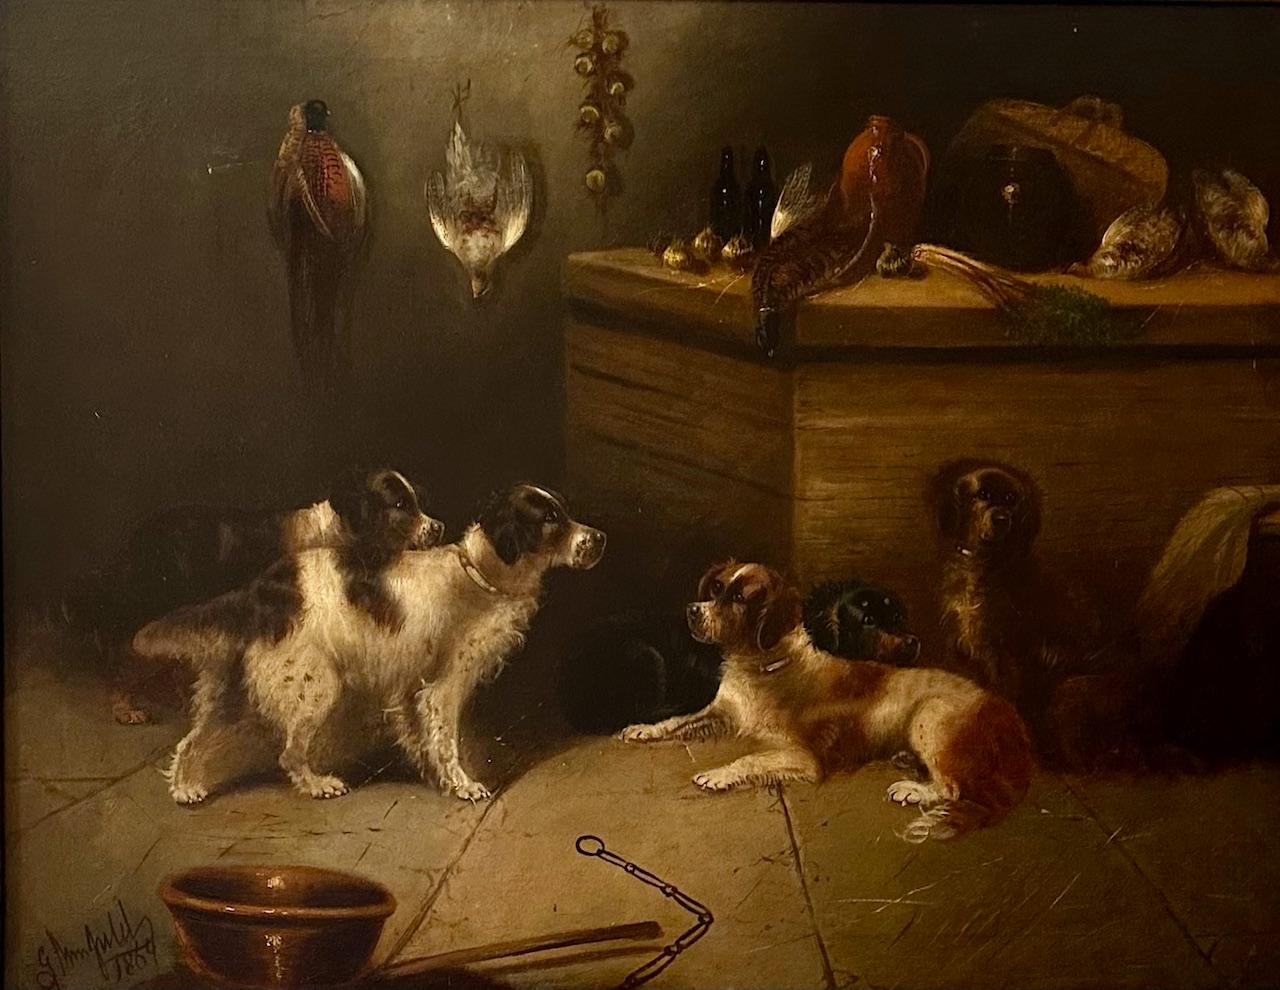 Großes englisches Ölgemälde des 19. Jahrhunderts - Fünf Jagdhunde - signiert E. Armfield.

Großes, signiertes Gemälde in Öl auf Leinwand. Dieses Armfield zeigt fünf Jagdhunde in einem rustikalen Interieur. Das Gemälde ist in höchster künstlerischer